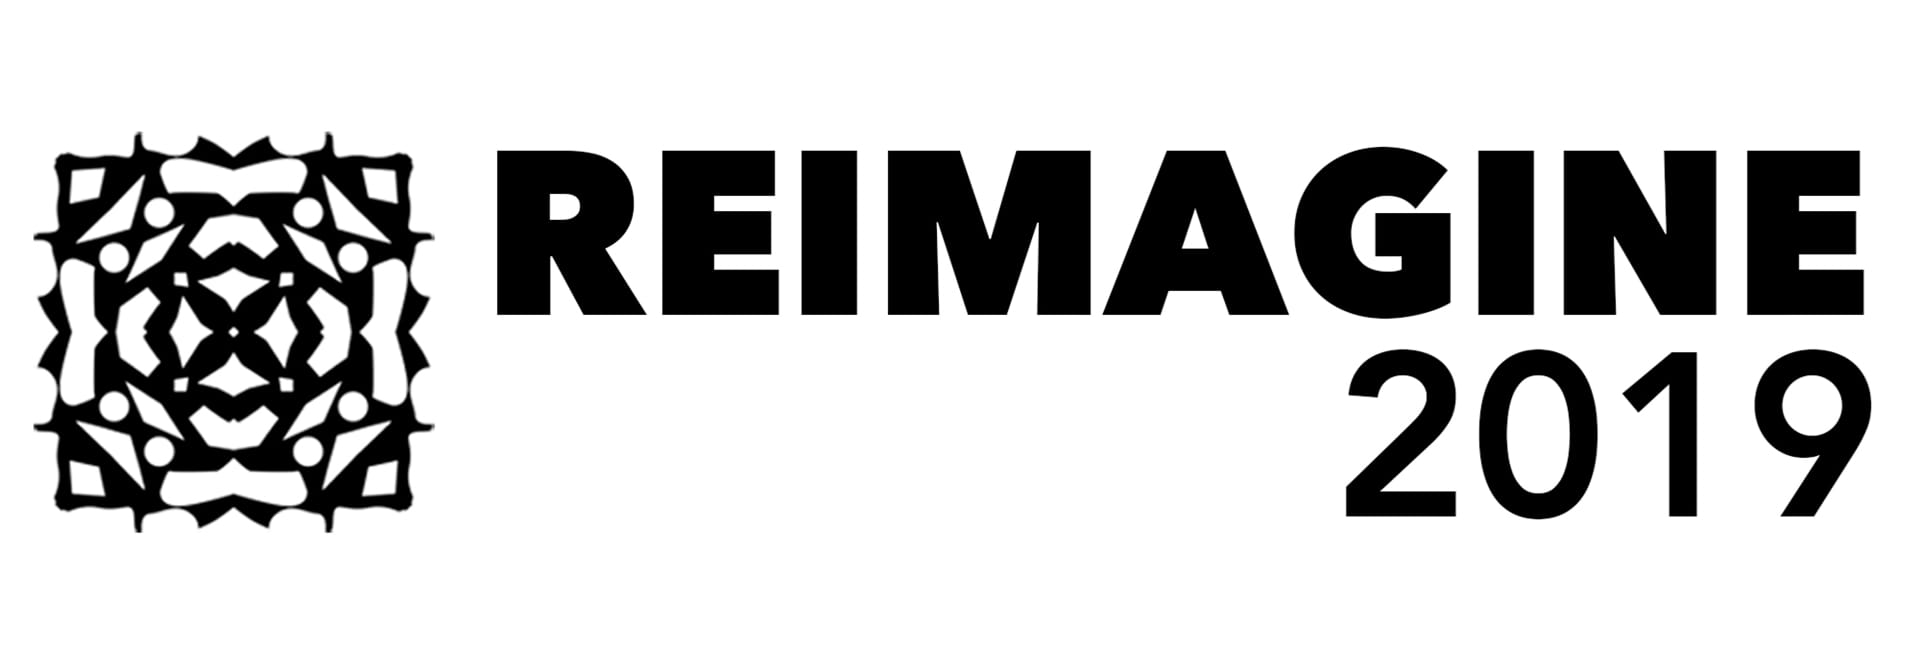 Reimagine Logo